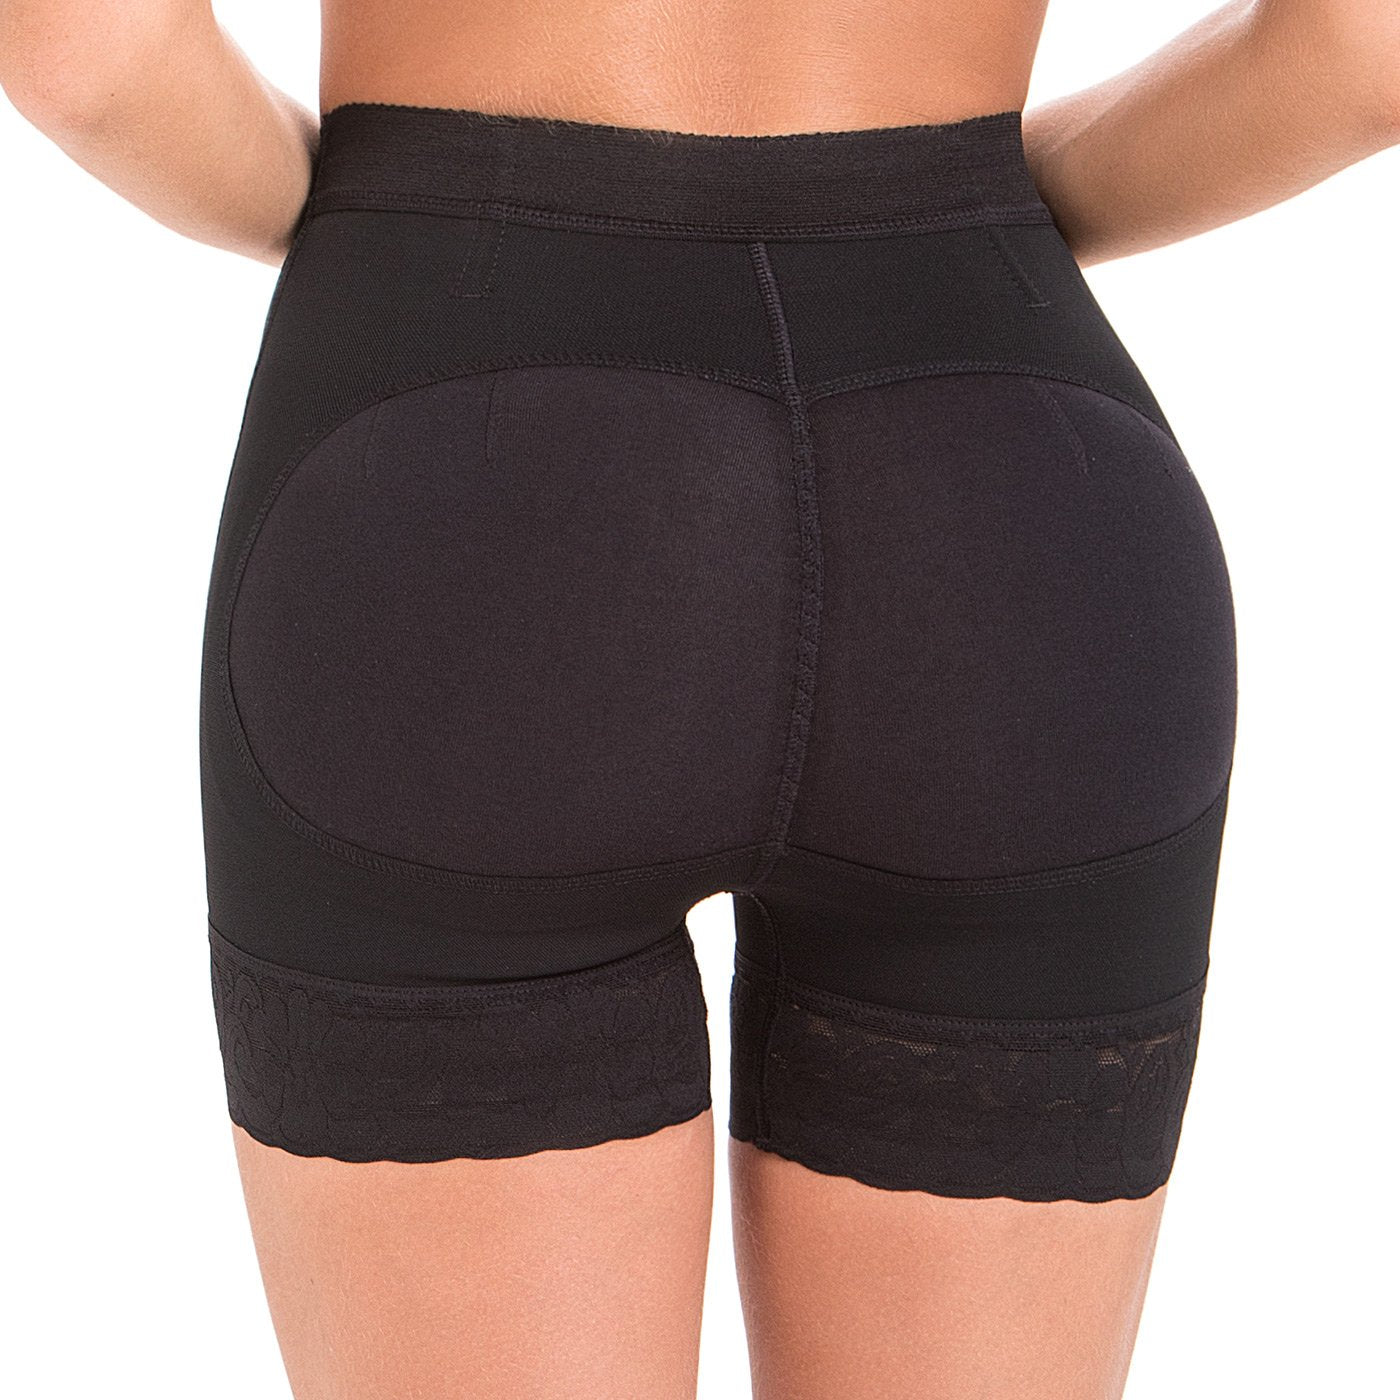 Garteder Women Shapewear Butt Lifter Plus Size PU Mesh Sexy Padded Butt  Booster Enhancing Hip Leather Shorts Underwear 